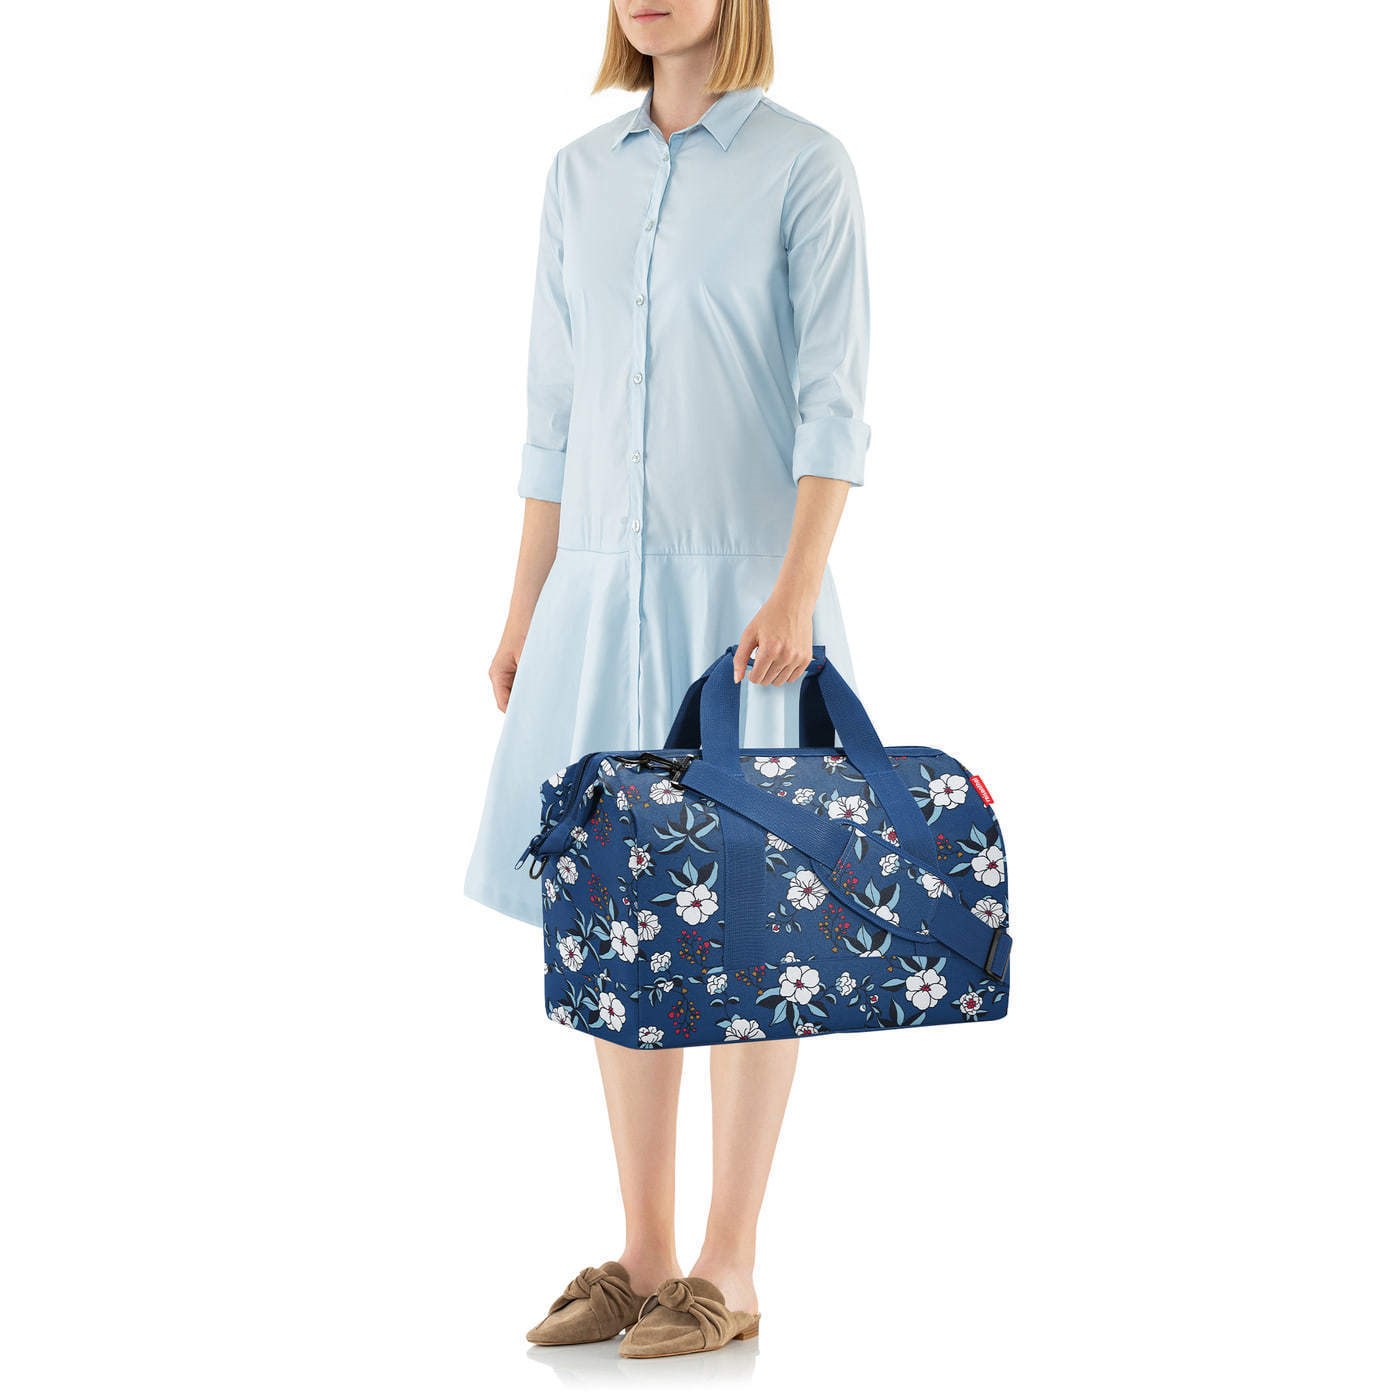 Cestovní taška Allrounder L garden blue_3